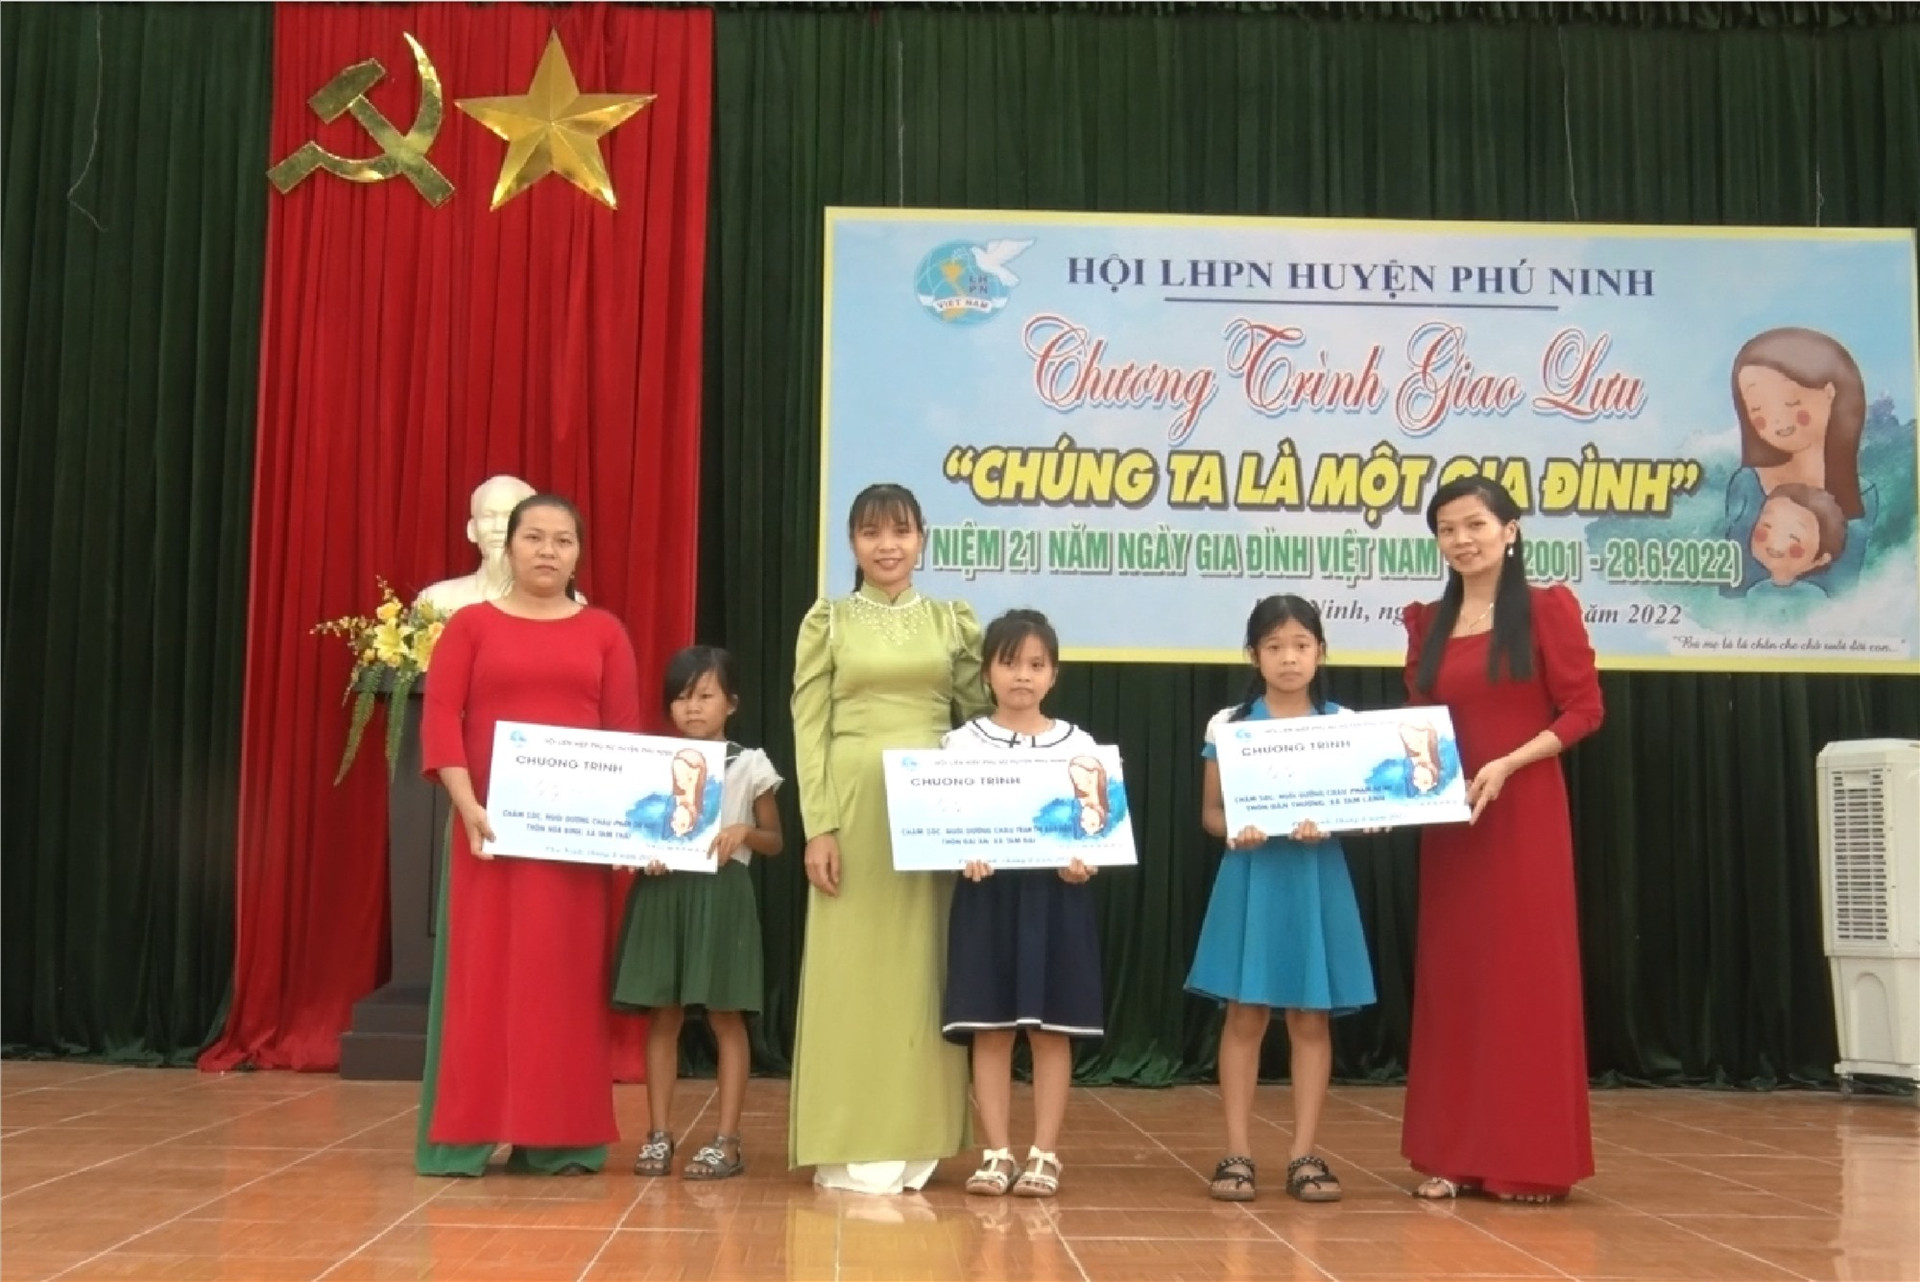 Ủy ban MTTQ Việt Nam huyện Phú Ninh nhận đỡ đầu 3 trẻ mồ côi. Ảnh: Đ.V